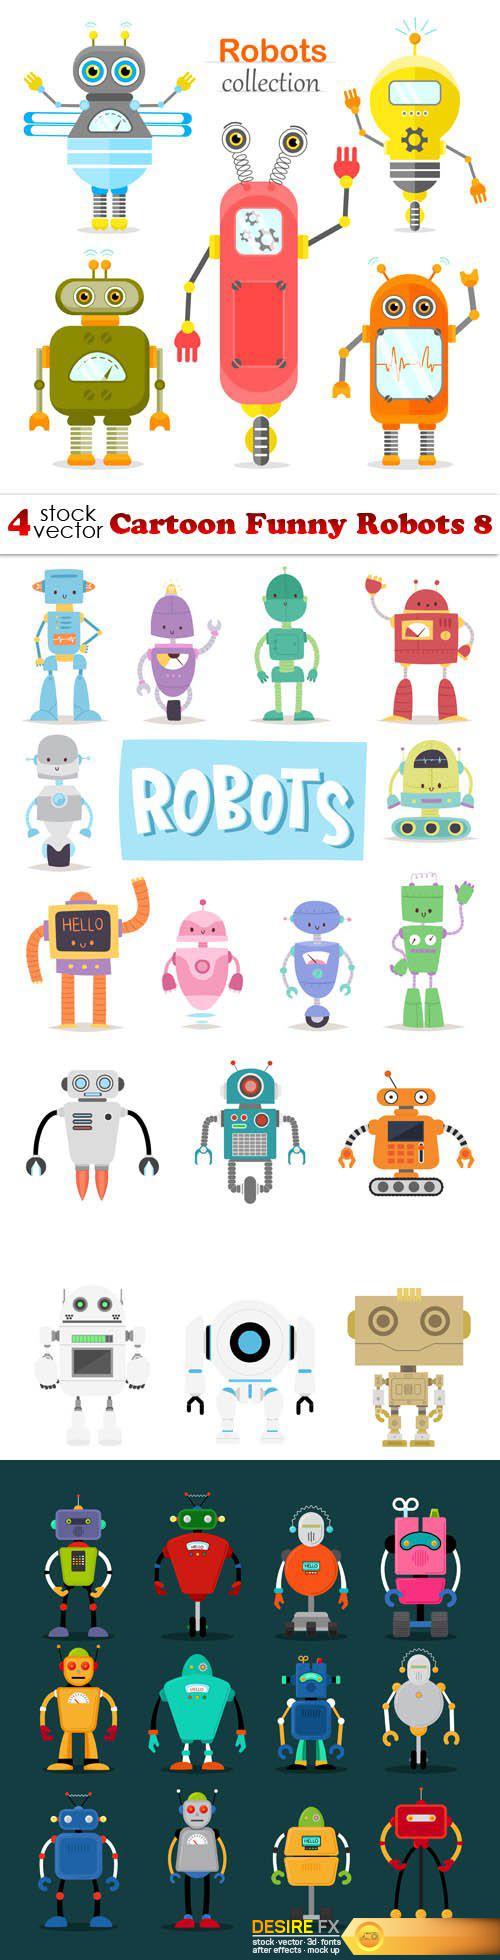 Vectors - Cartoon Funny Robots 8